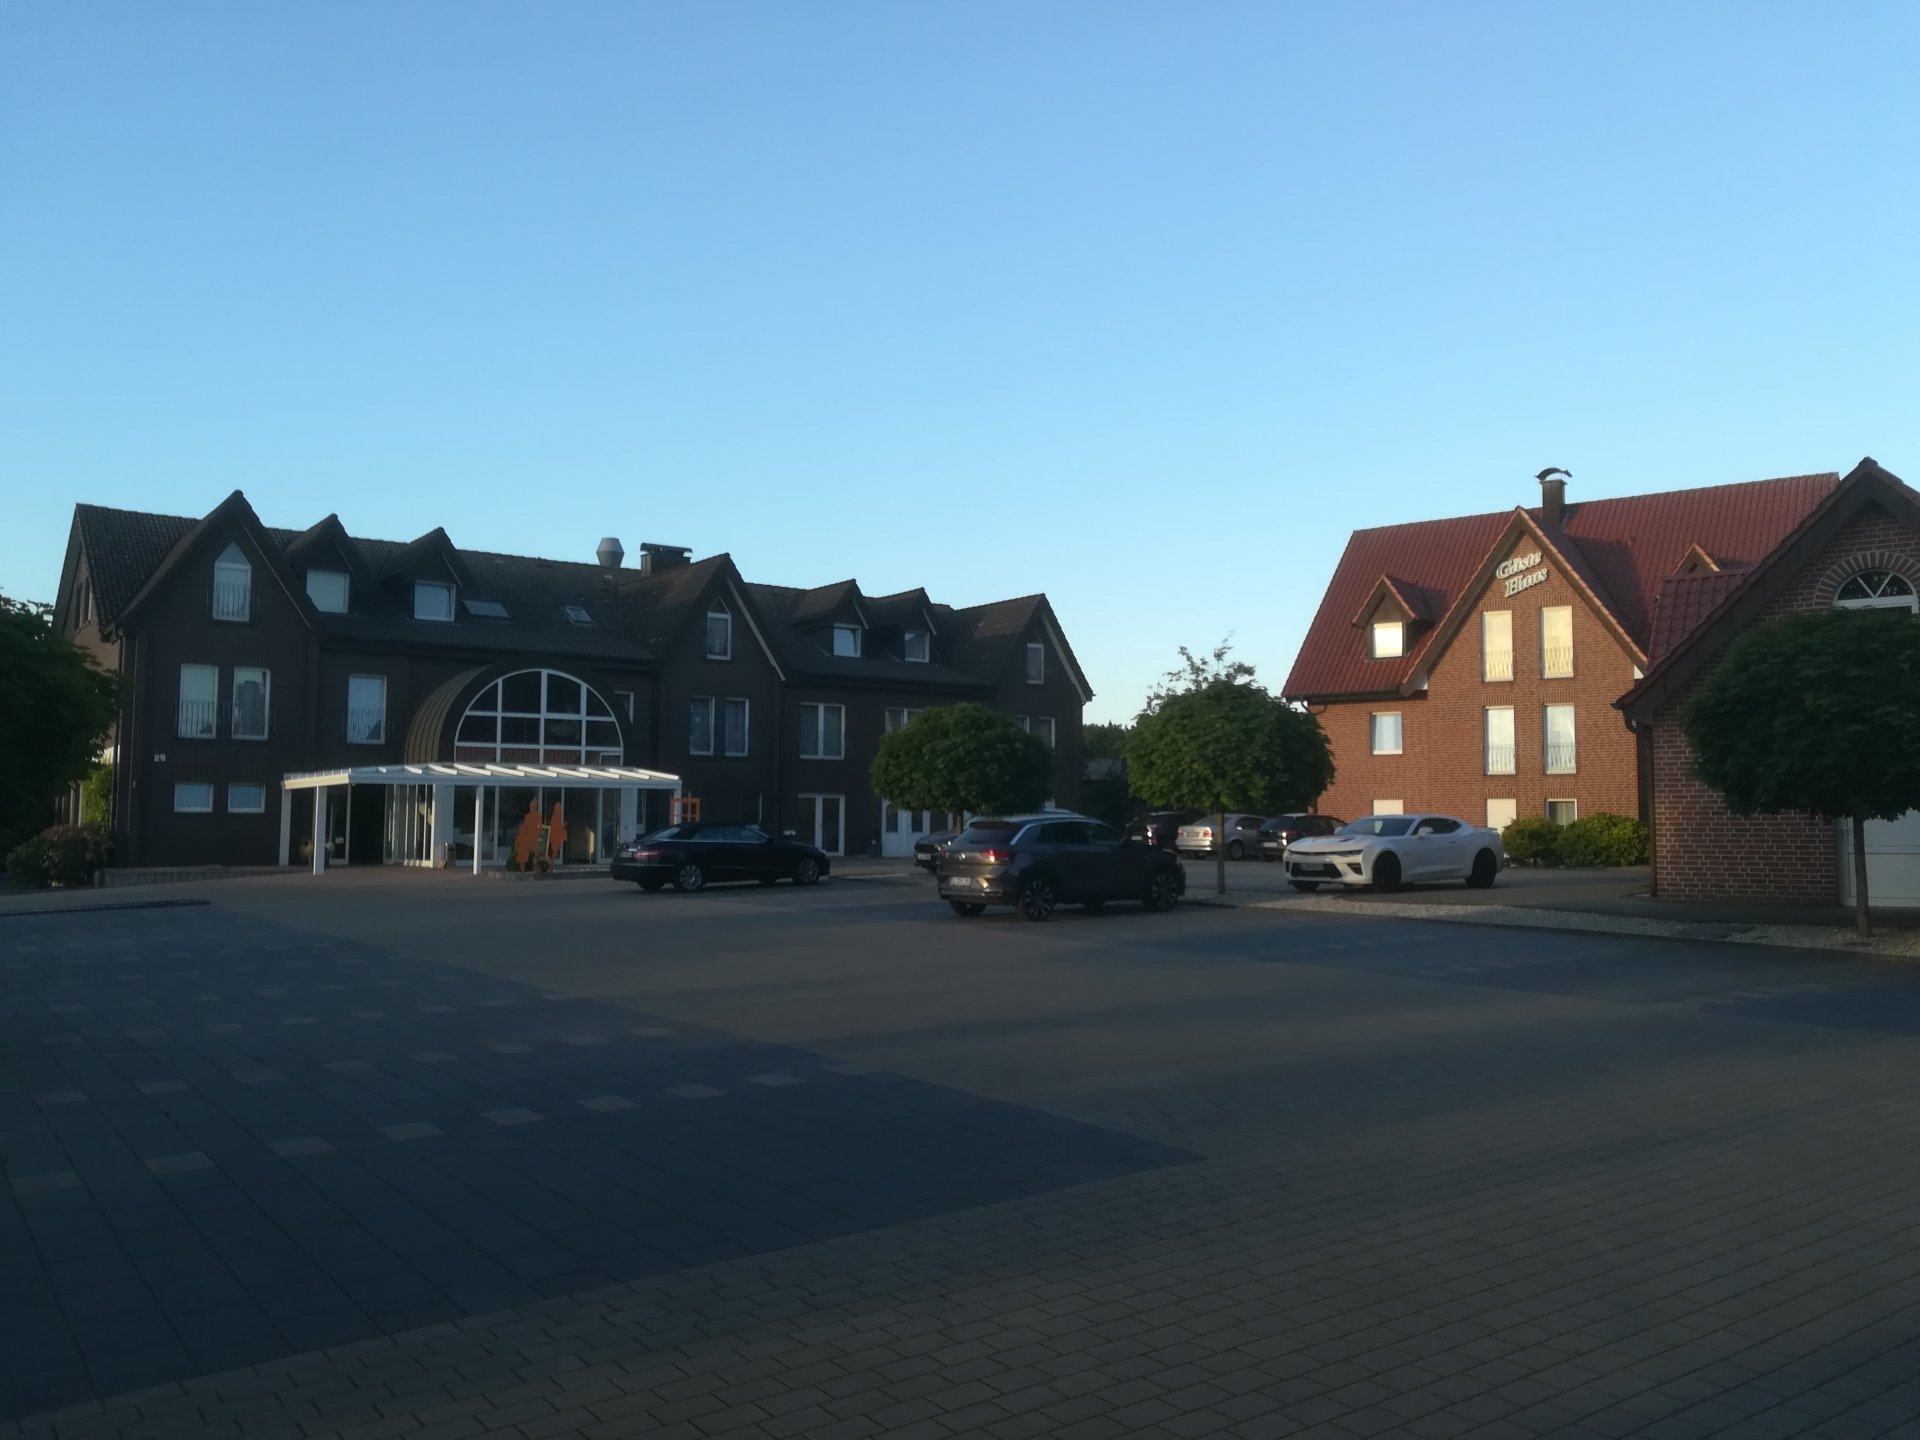 6 Tage – Radwandern im südlichen Emsland inkl. Abendessen – Hotel zum Märchenwald (3 Sterne) in Lingen (Ems), Niedersachsen inkl. Halbpension